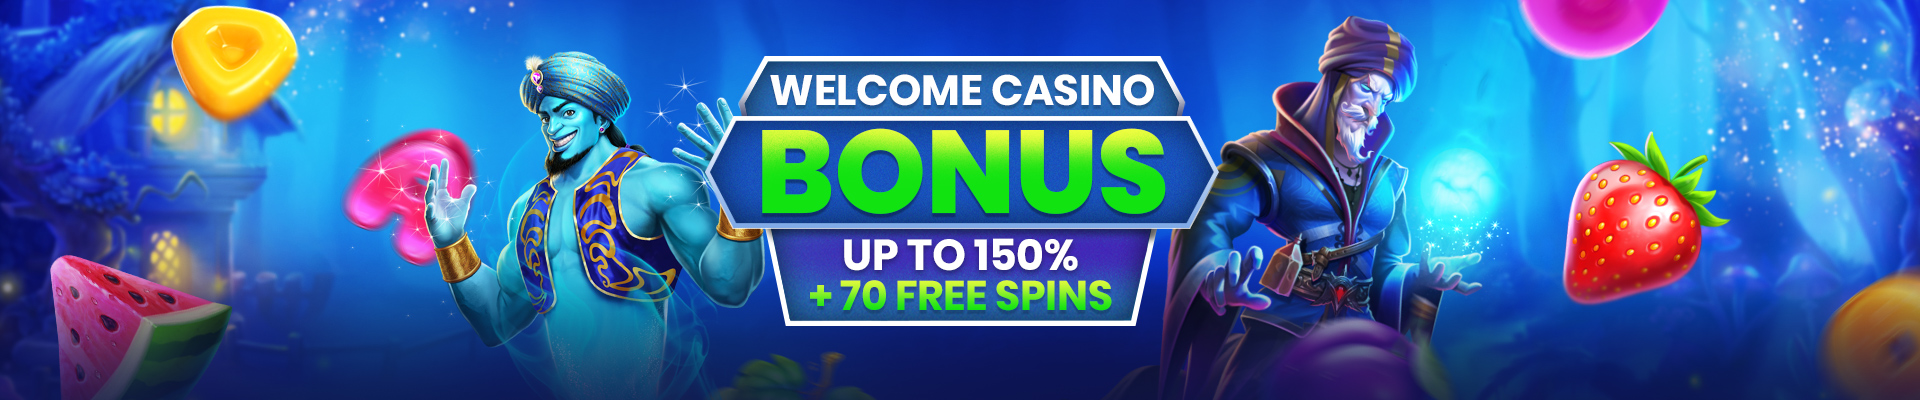 Velobet Casino Bonus Offer